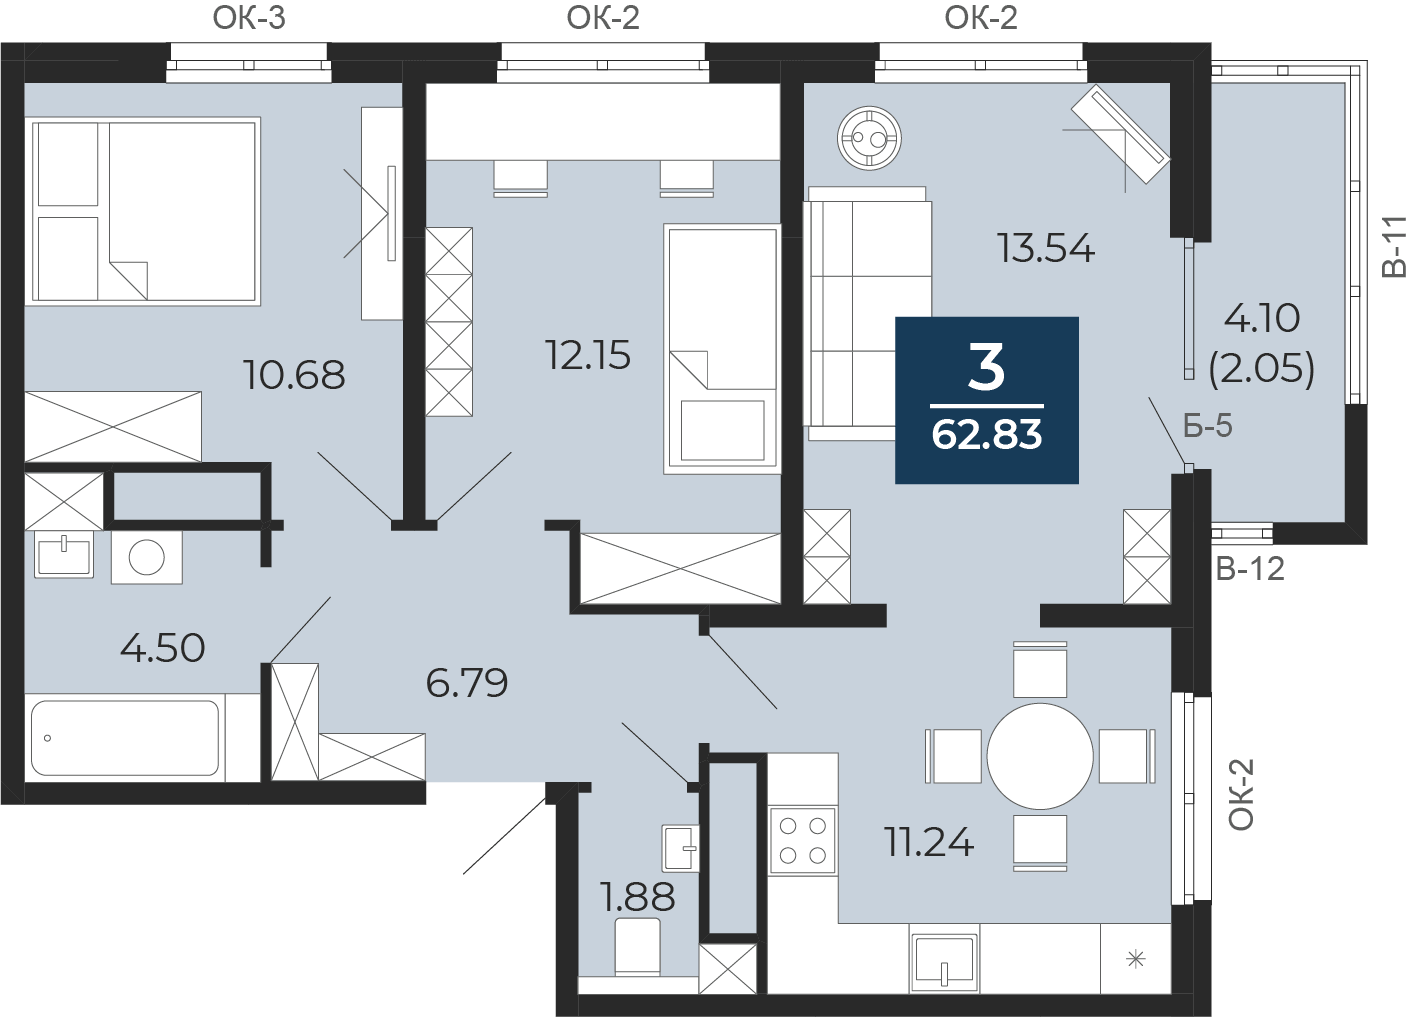 Квартира № 112, 3-комнатная, 62.83 кв. м, 17 этаж